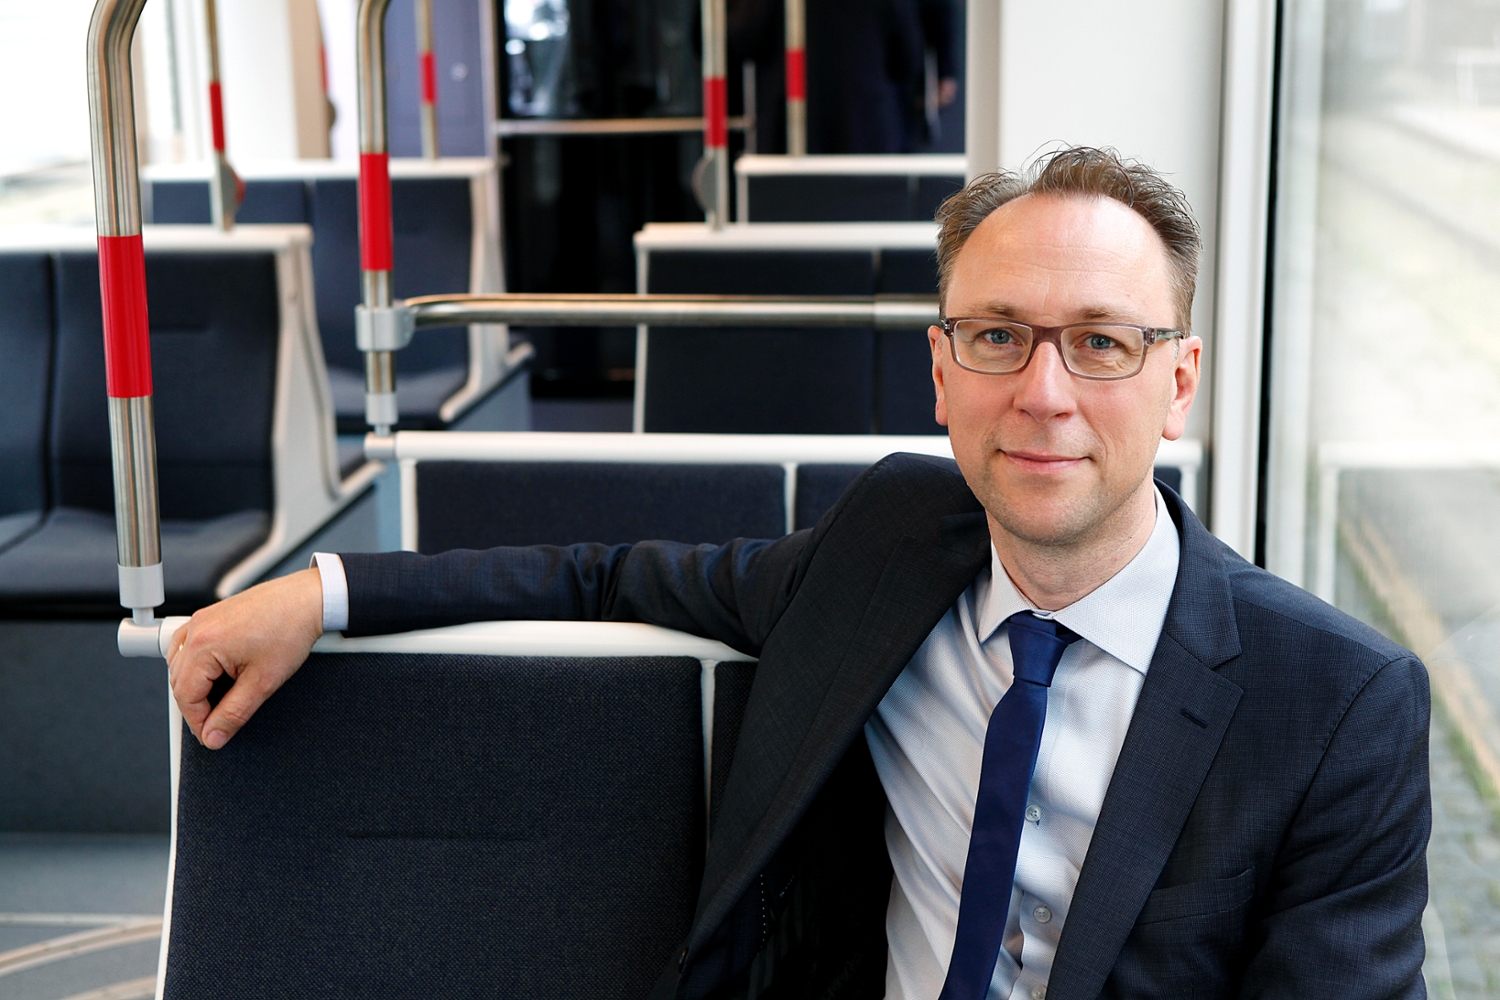 Laut Claus Rehfeld Moshøj, Managing Director der Aarhus Letbane, wird die Stadtbahn bessere Dienstleistungen, Strecken und Verbindungen für ihre Fahrgäste anbieten.